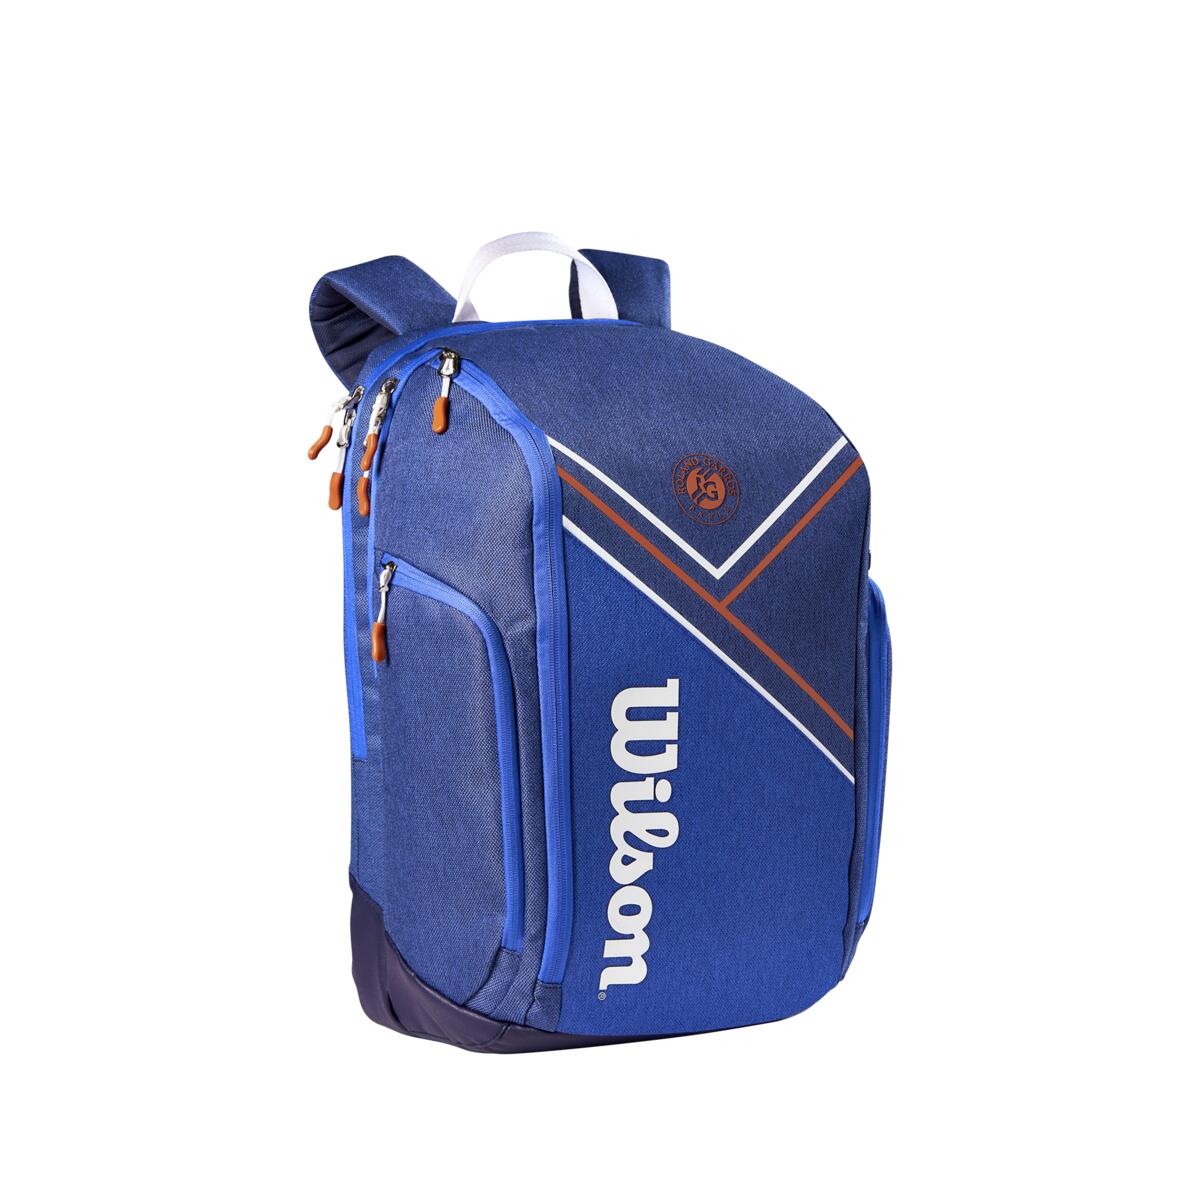 Wilson Junior Tennis Backpack Blue/orange